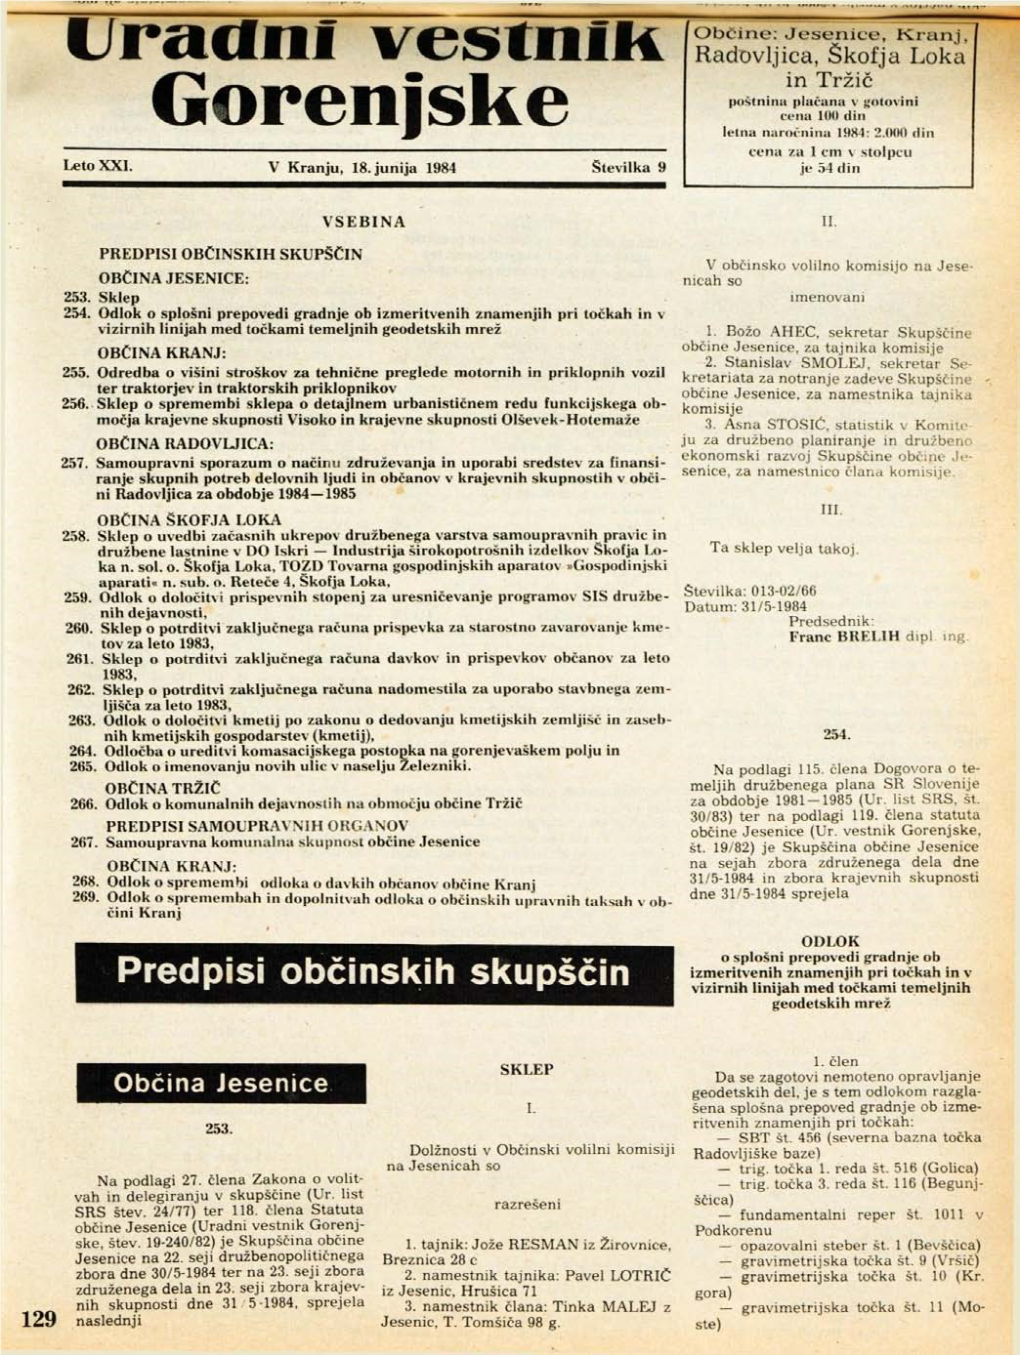 Gorenjske Letna Naročnina 1984: 2.000 Din Cena Za 1 Cm V Stolpcu Leto XXI